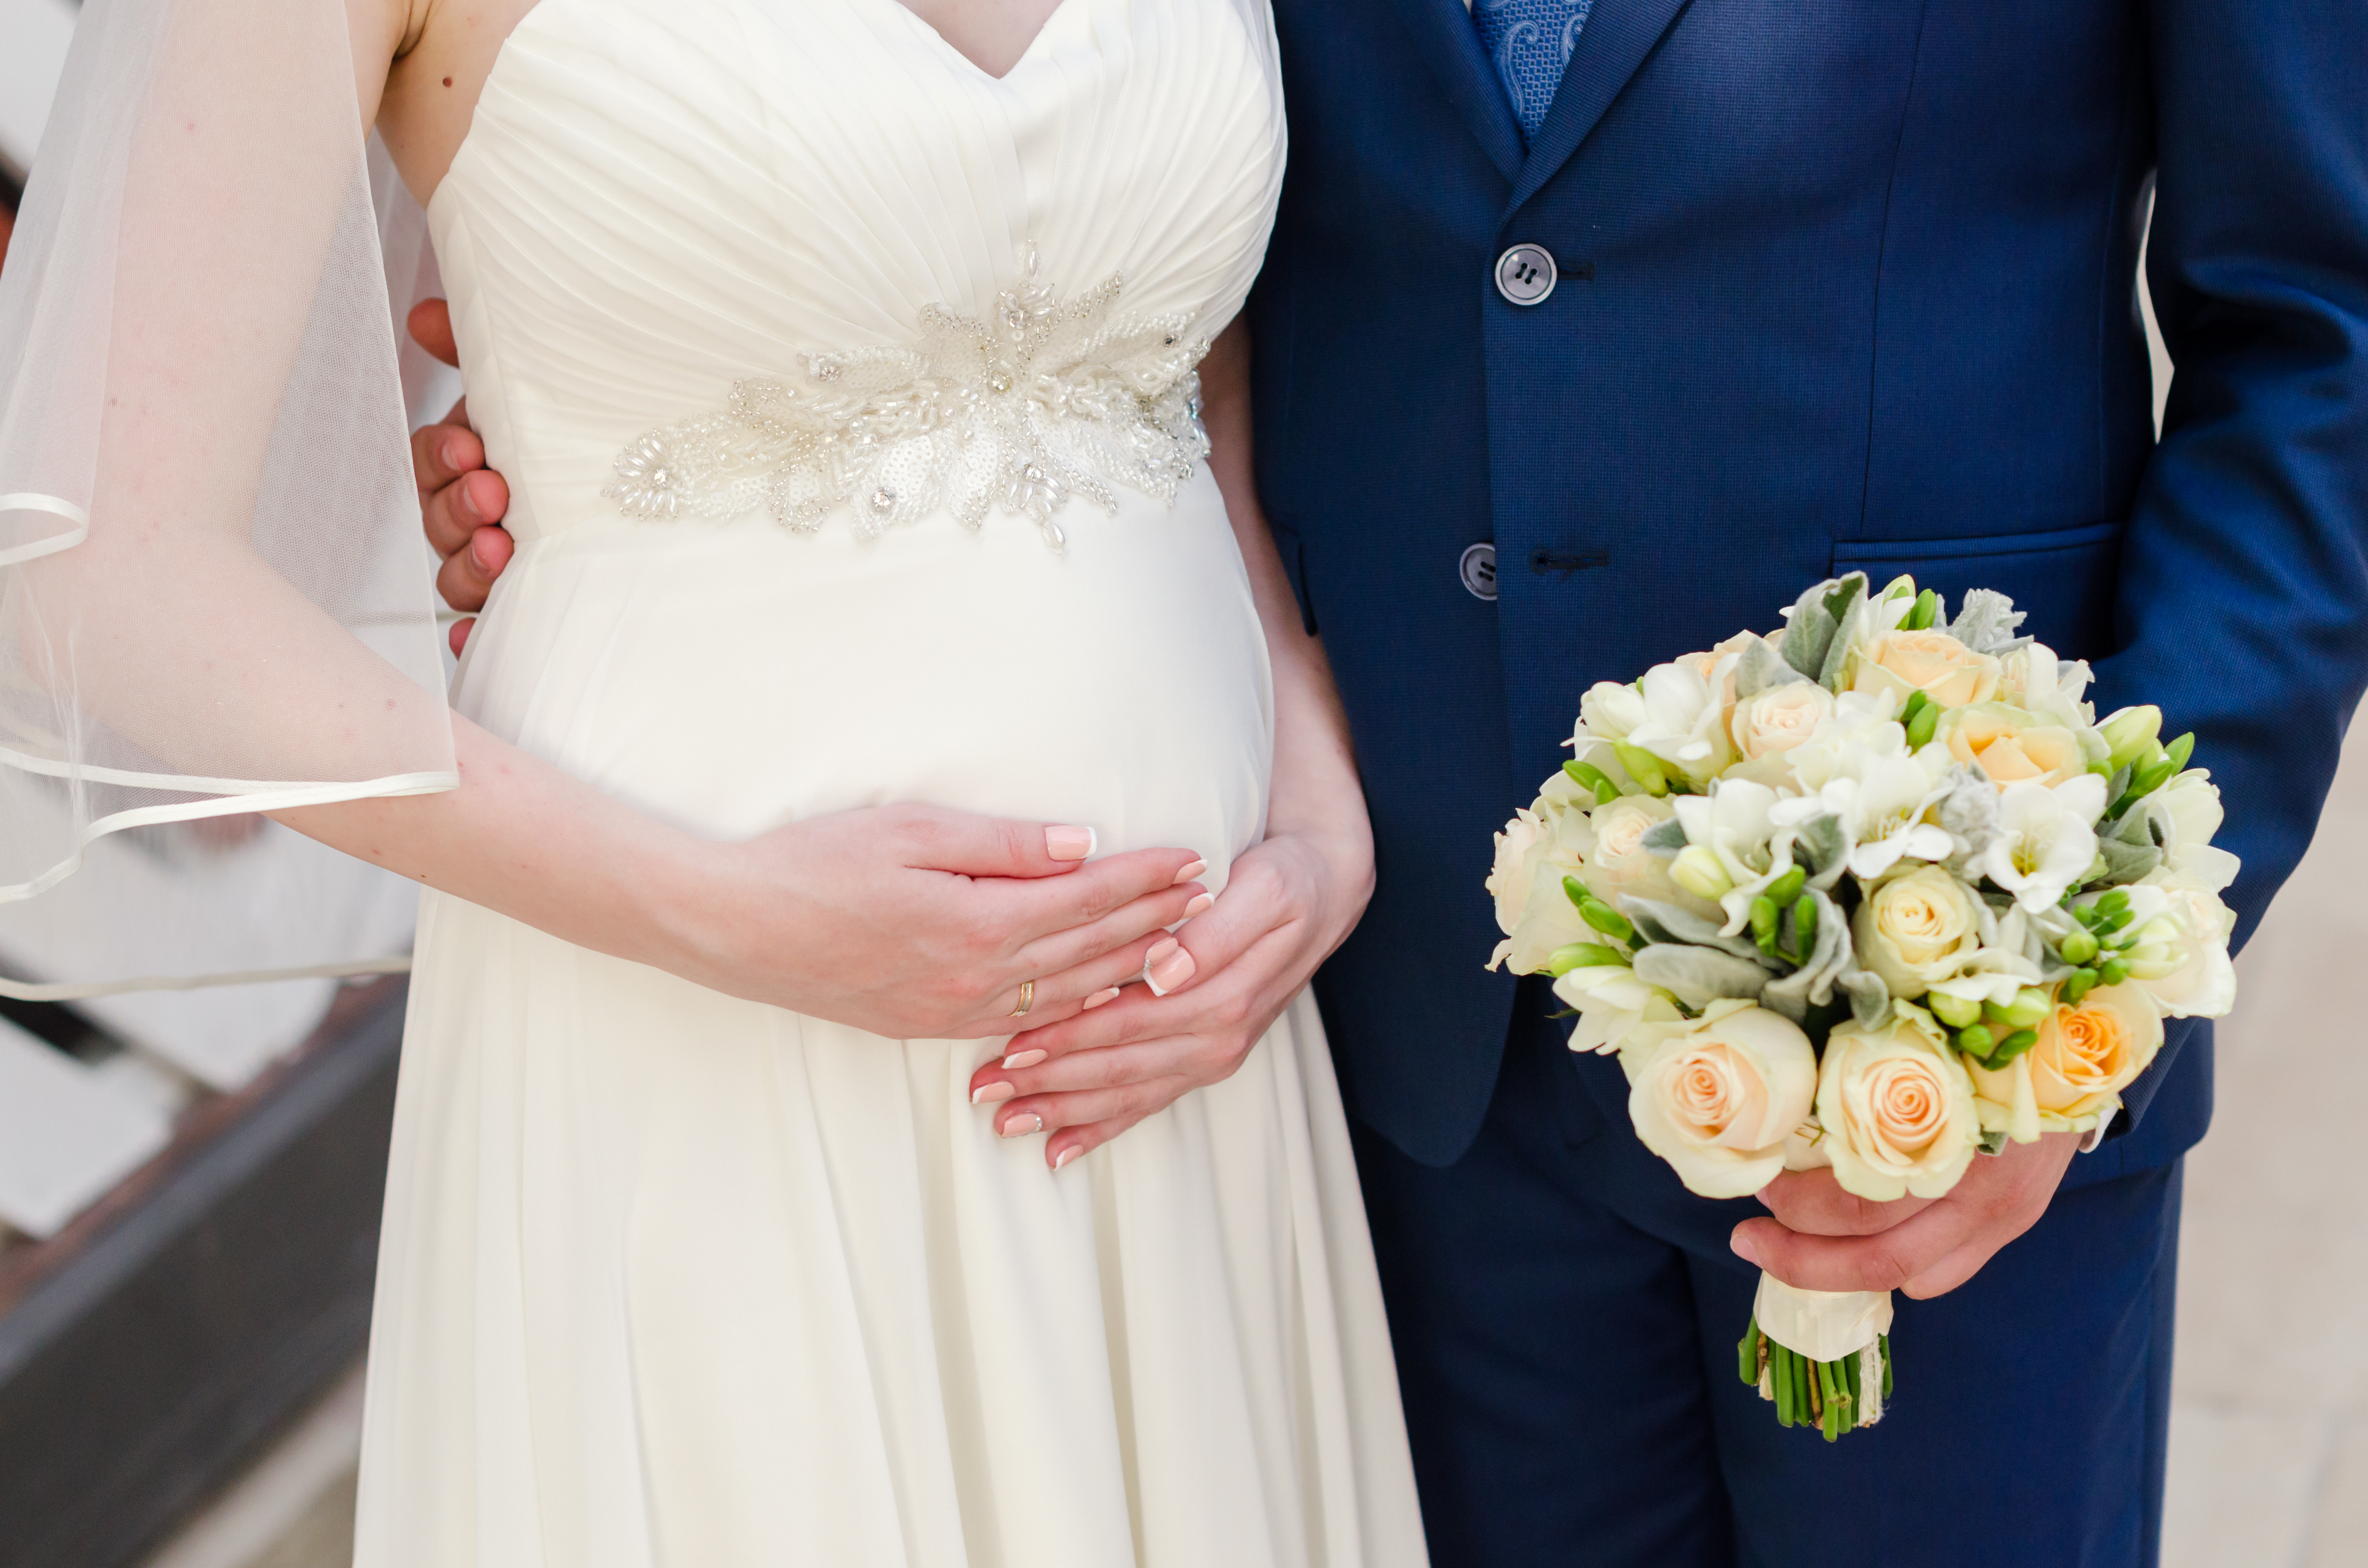 Une mariée enceinte tient son ventre pendant que son marié tient son bouquet | Source : Shutterstock